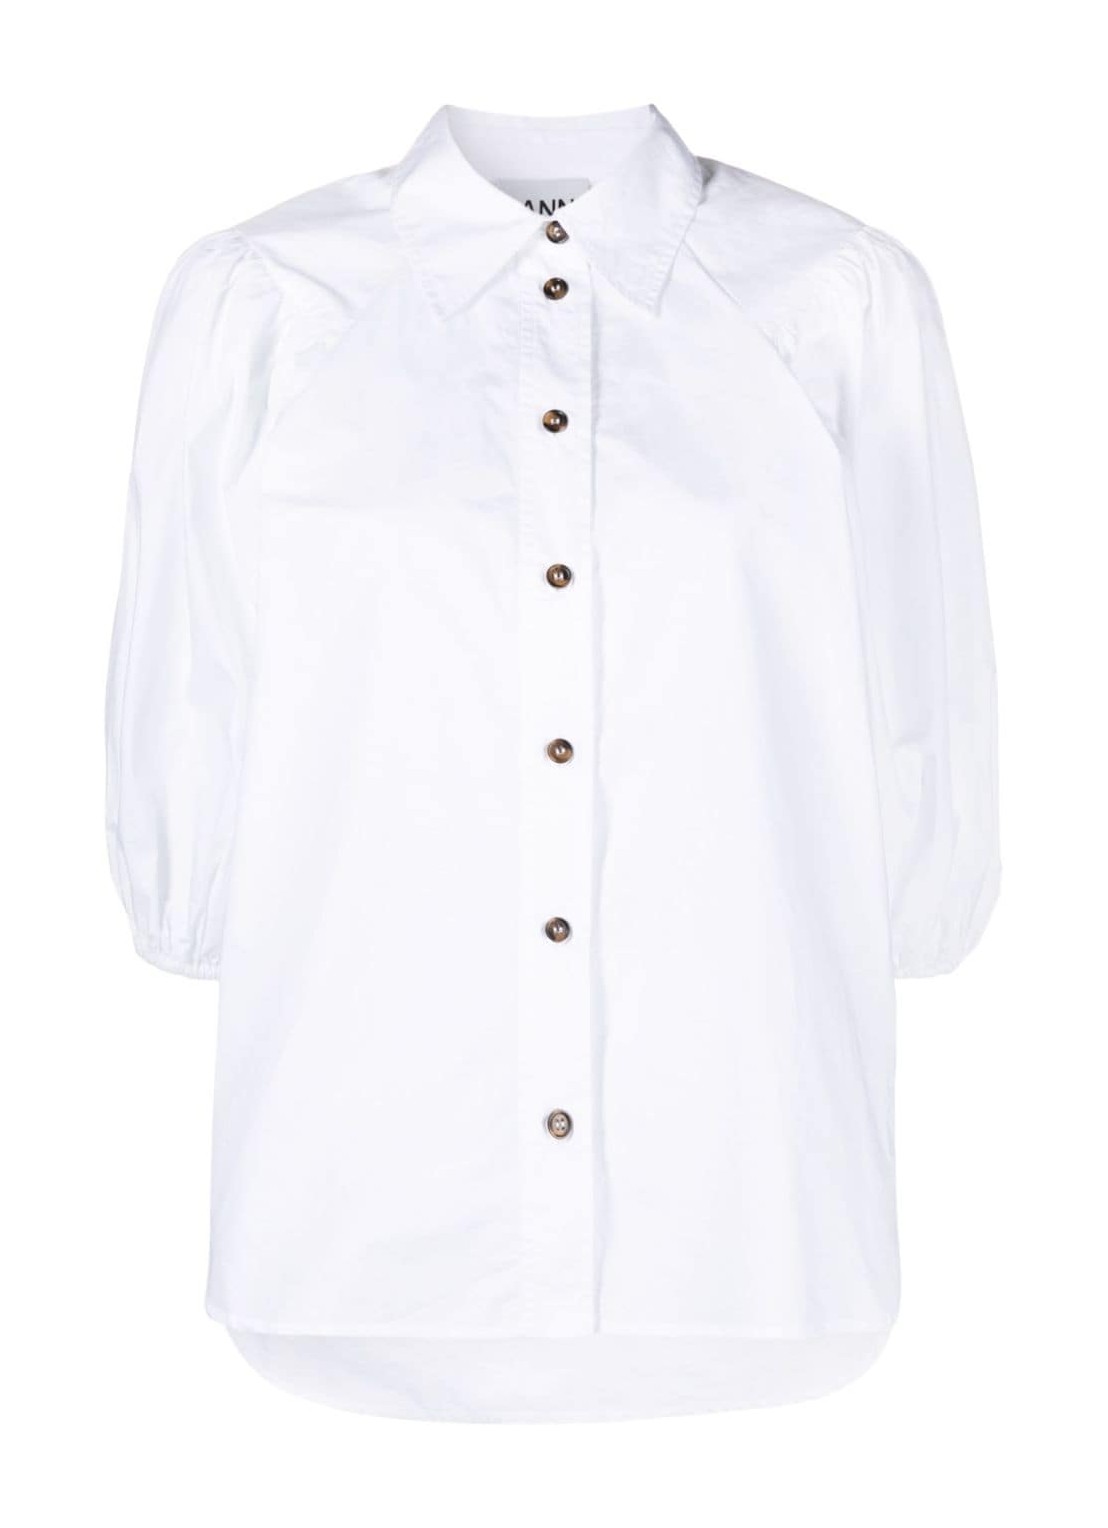 Camiseria ganni shirt woman cotton poplin shirt f8881 151 talla blanco
 